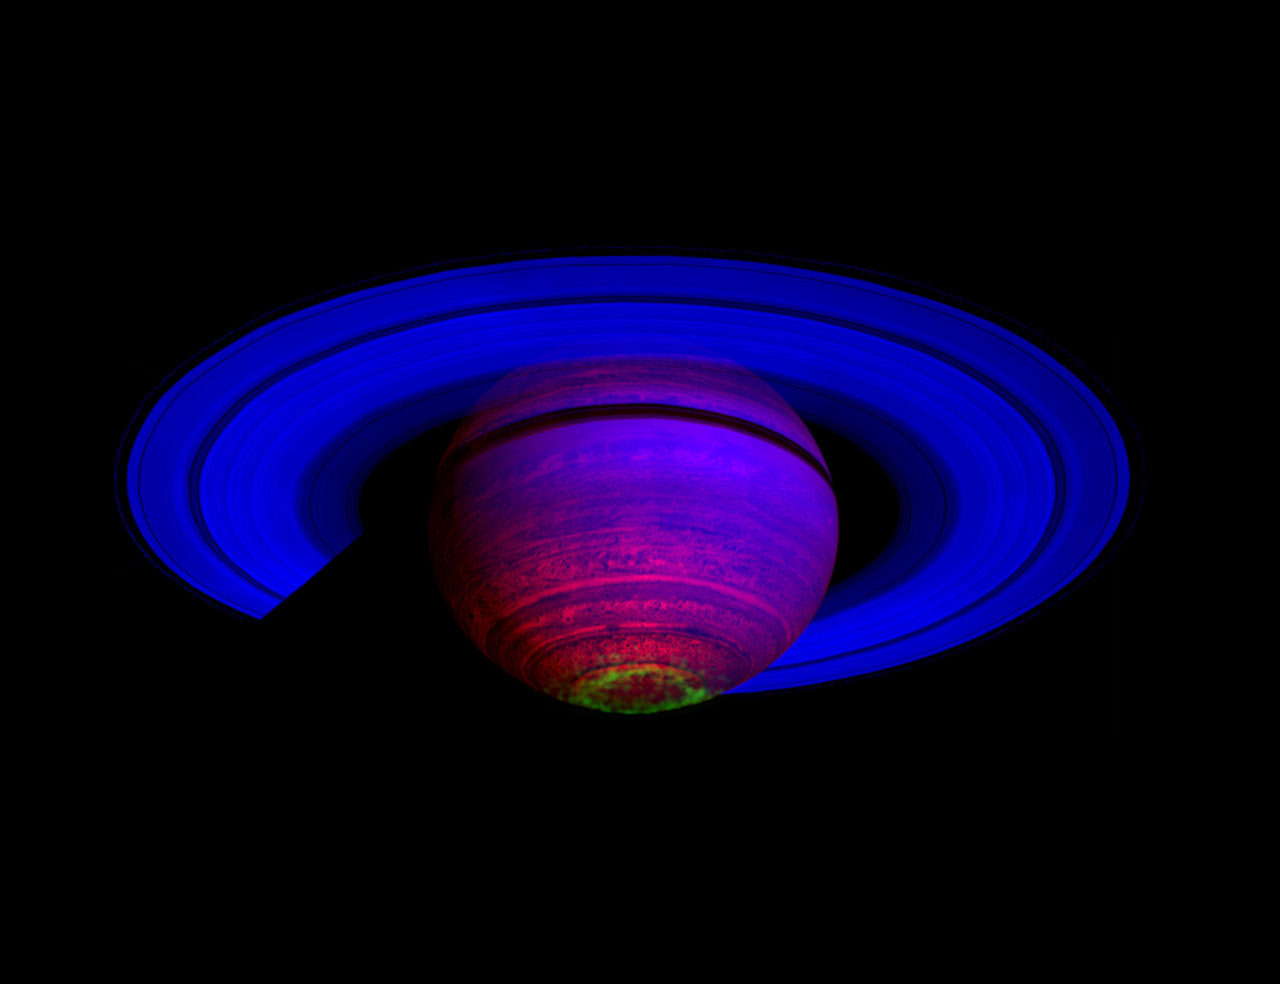 კასინიმ სატურნზე „სინათლის აჩრდილისებრი ფარდები“ შენიშნა [ვიდეო] 